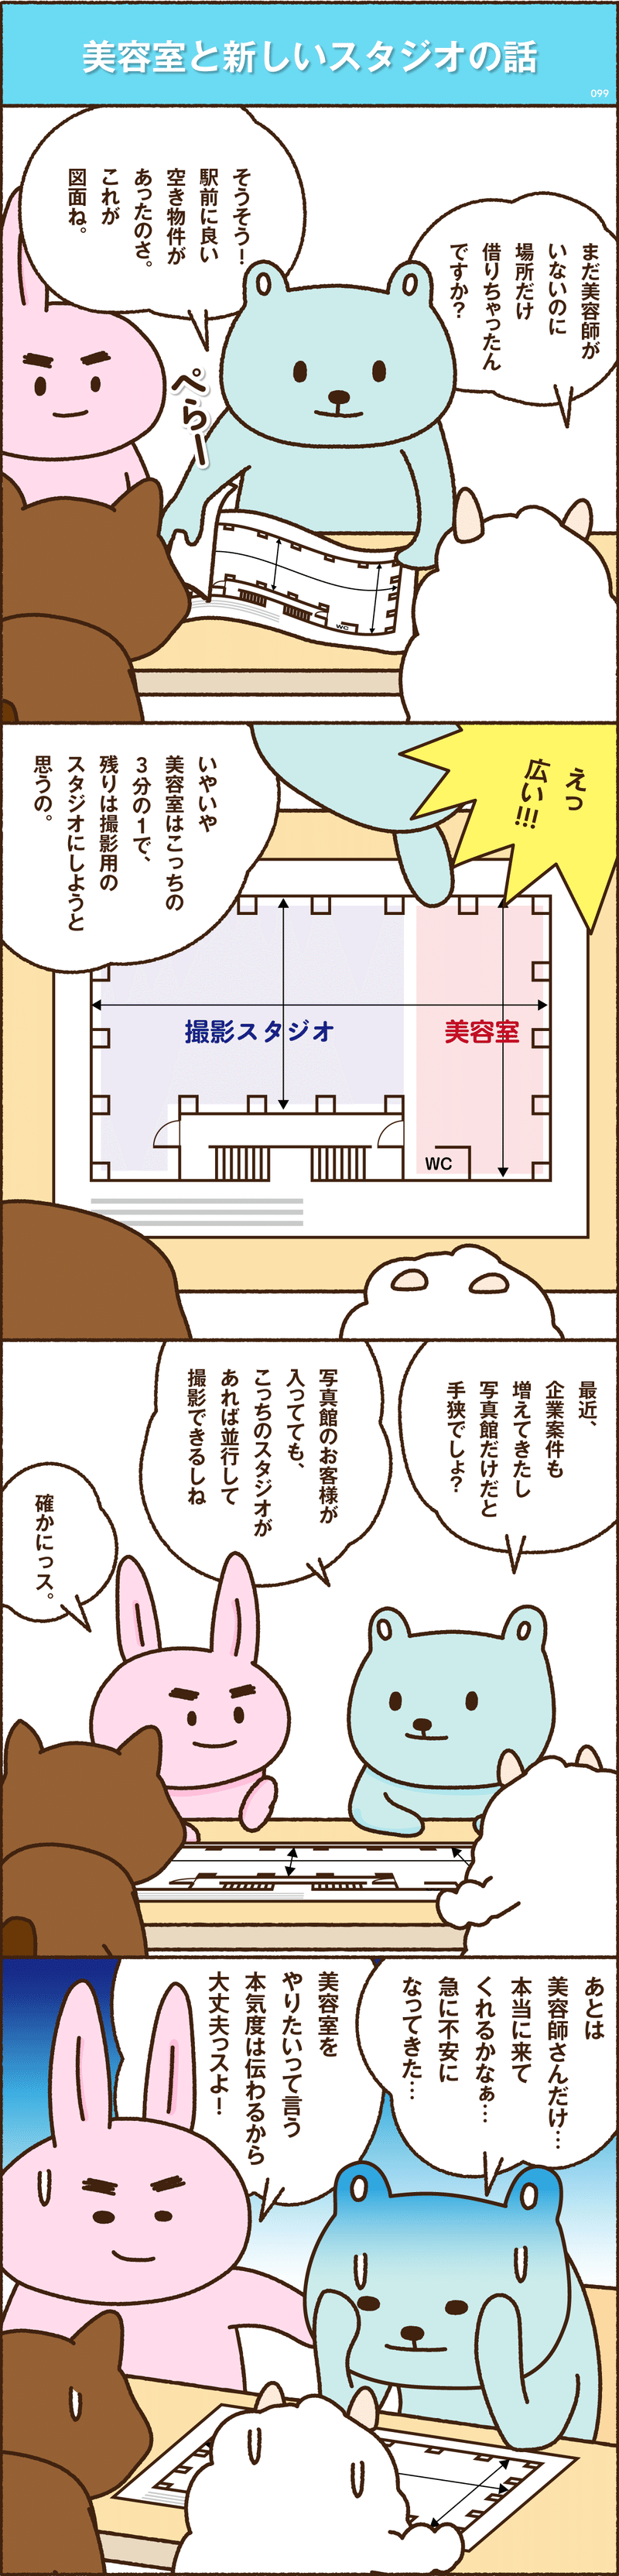 note漫画_4部_w3-4_#99-1